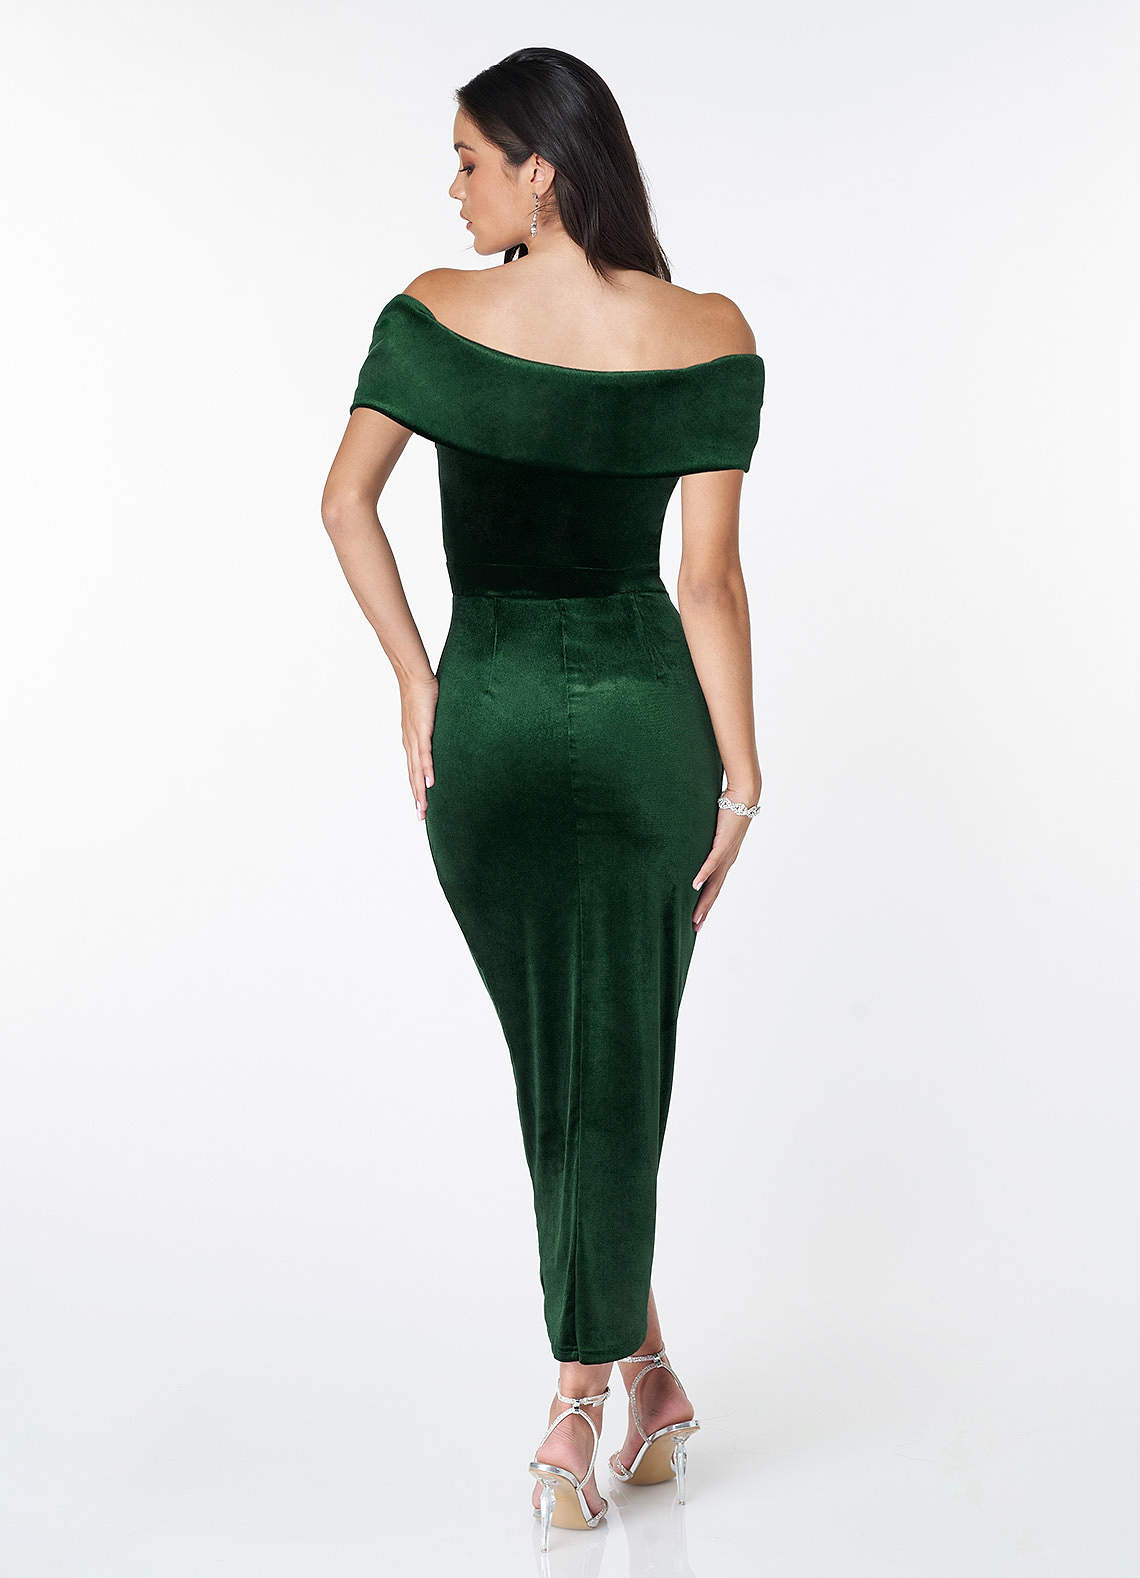 Osprey Dark Emerald Velvet Off-The-Shoulder Tulip Dress image1